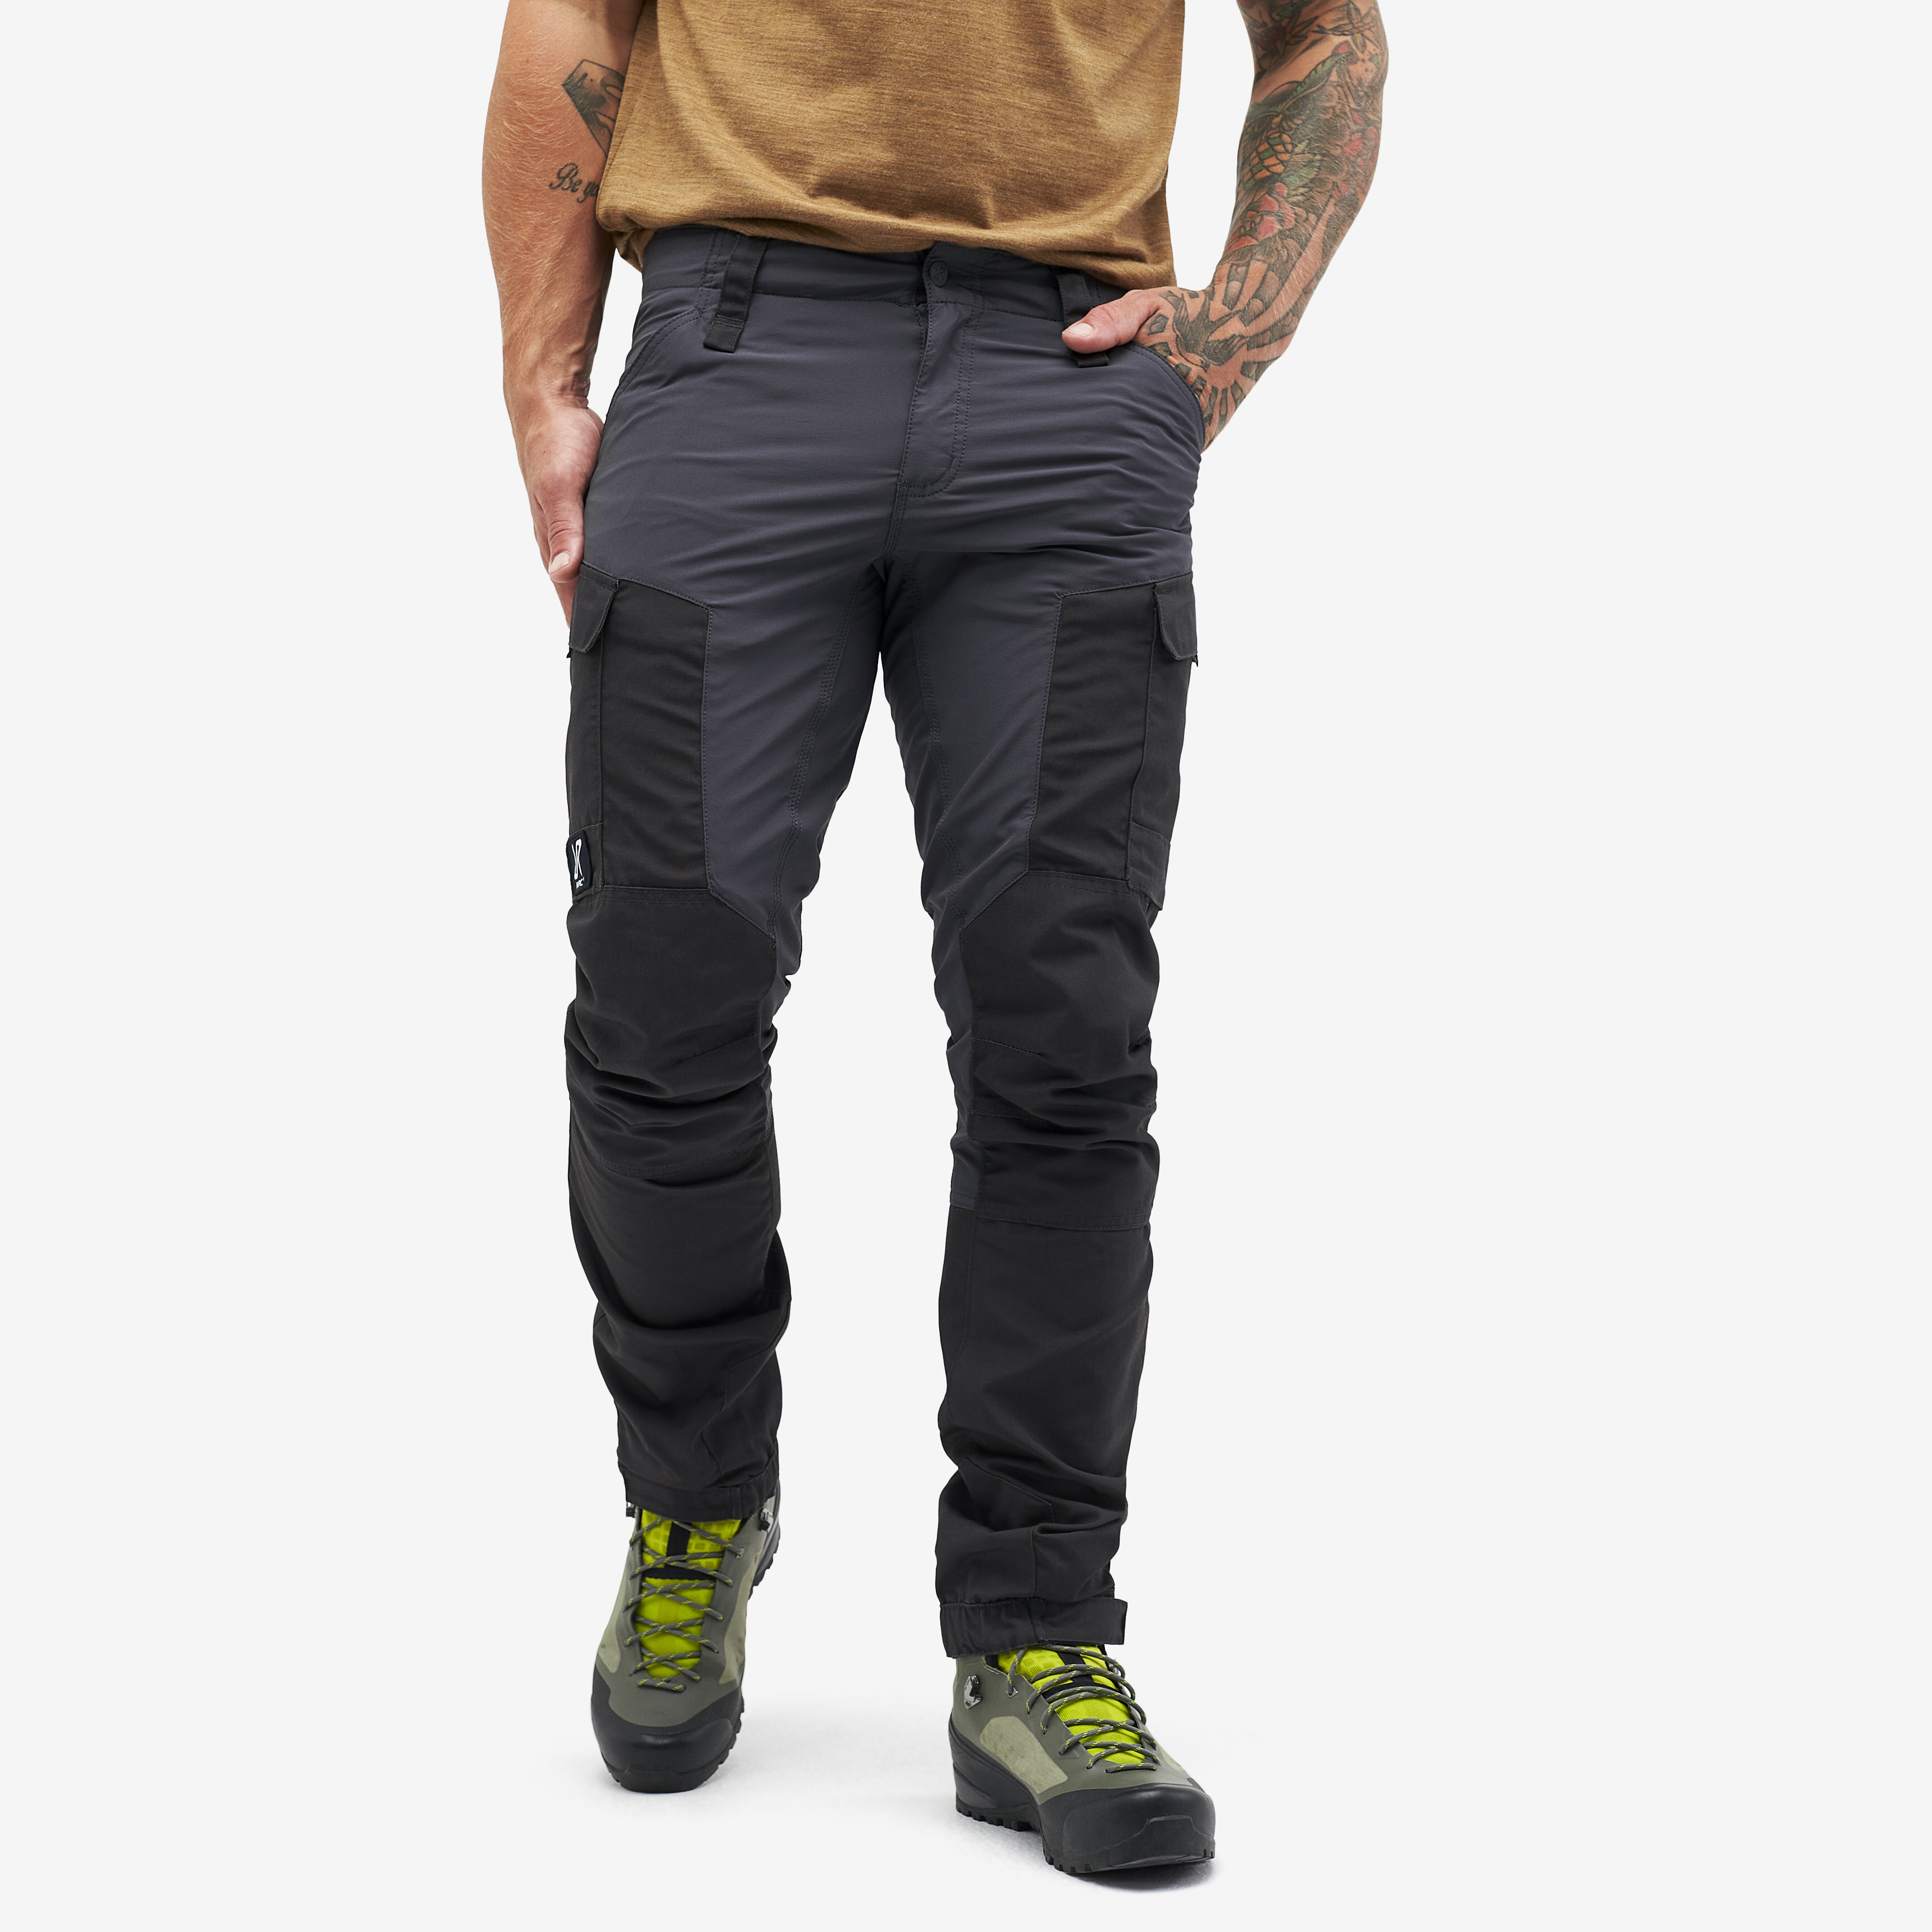 RVRC GP outdoorové kalhoty pro muže v tmavě šedé barvě